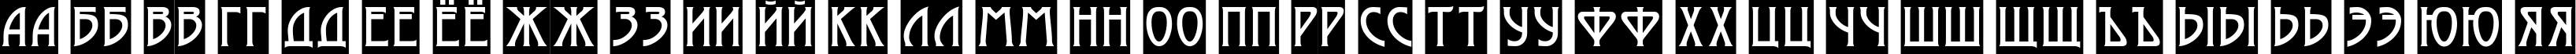 Пример написания русского алфавита шрифтом a_ModernoSl